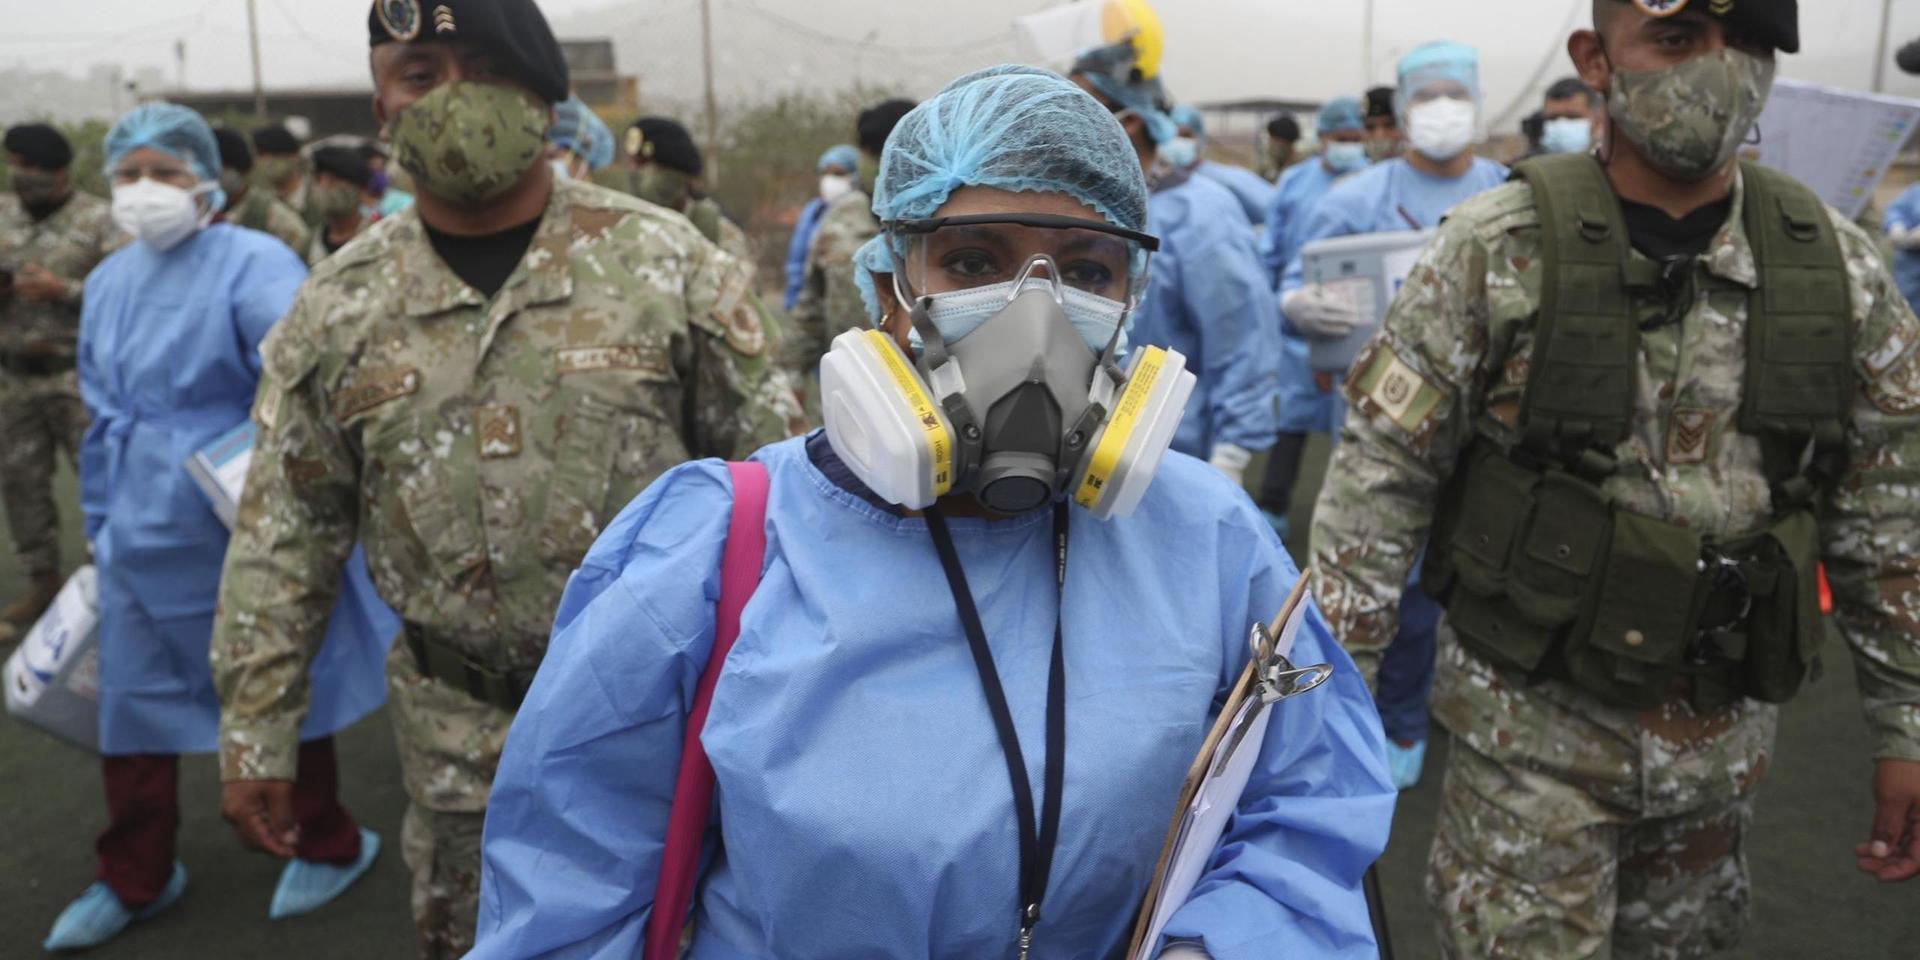 Hälsovårdsarbetare i Lima eskorteras av soldater på väg mot att testa peruaner. Bild från tidigare i januari.